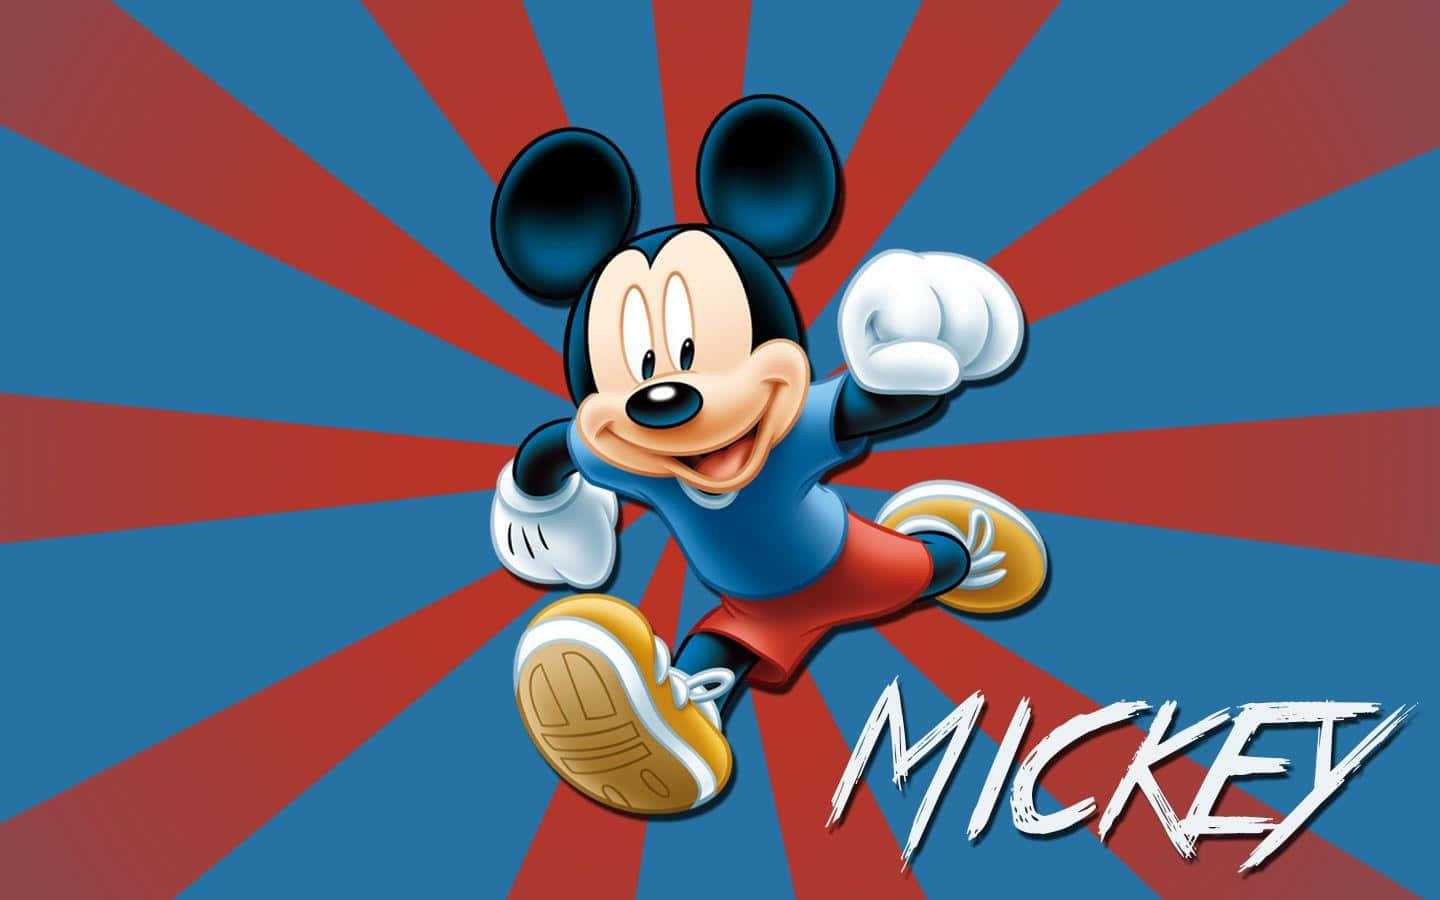 Mickeybaggrund.